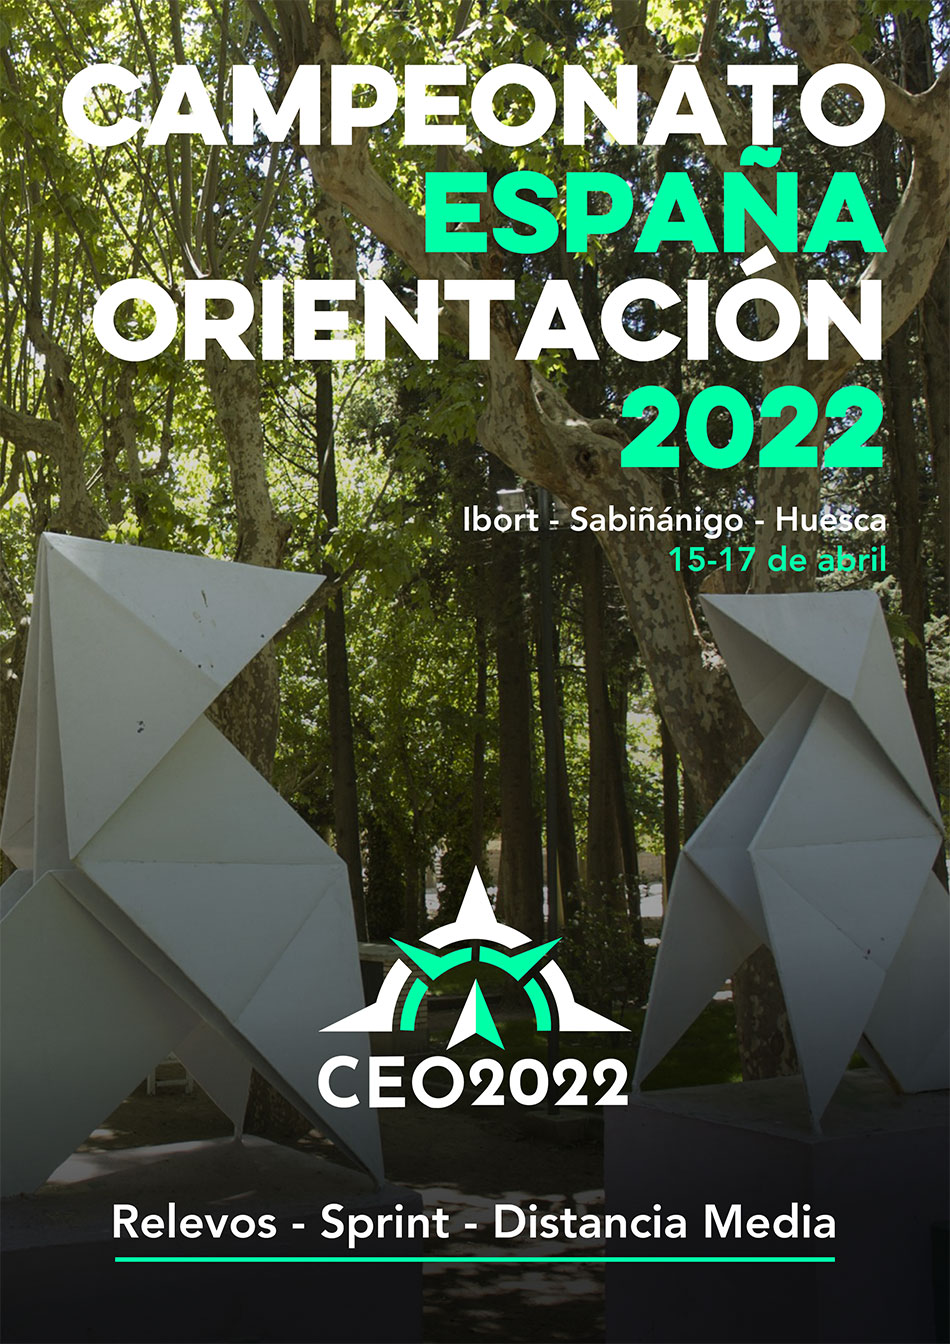 CEO 2022 Huesca